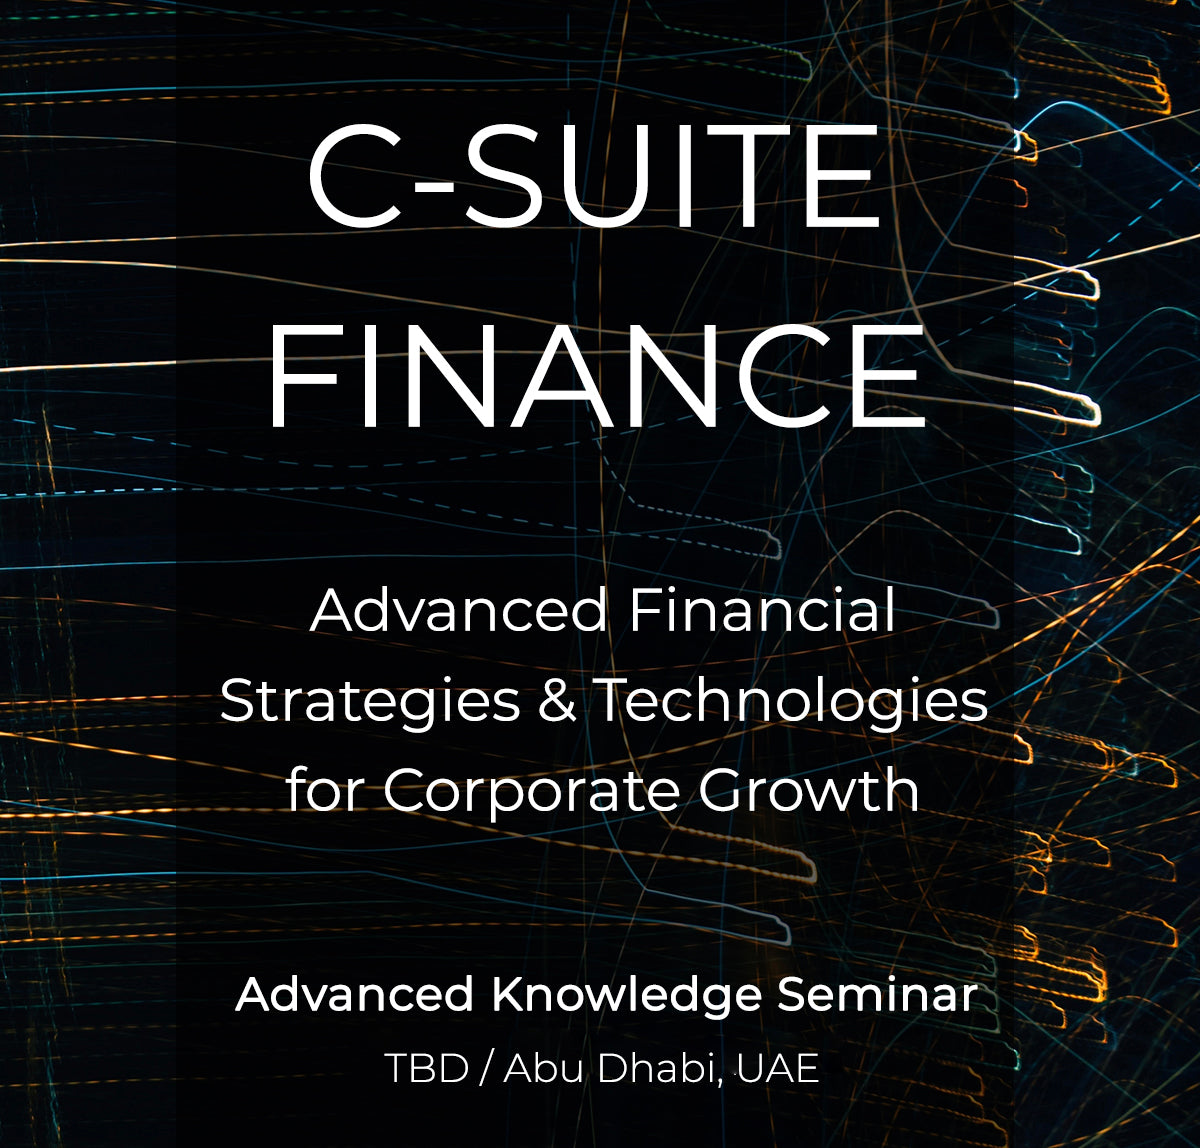 C-Suite Finance